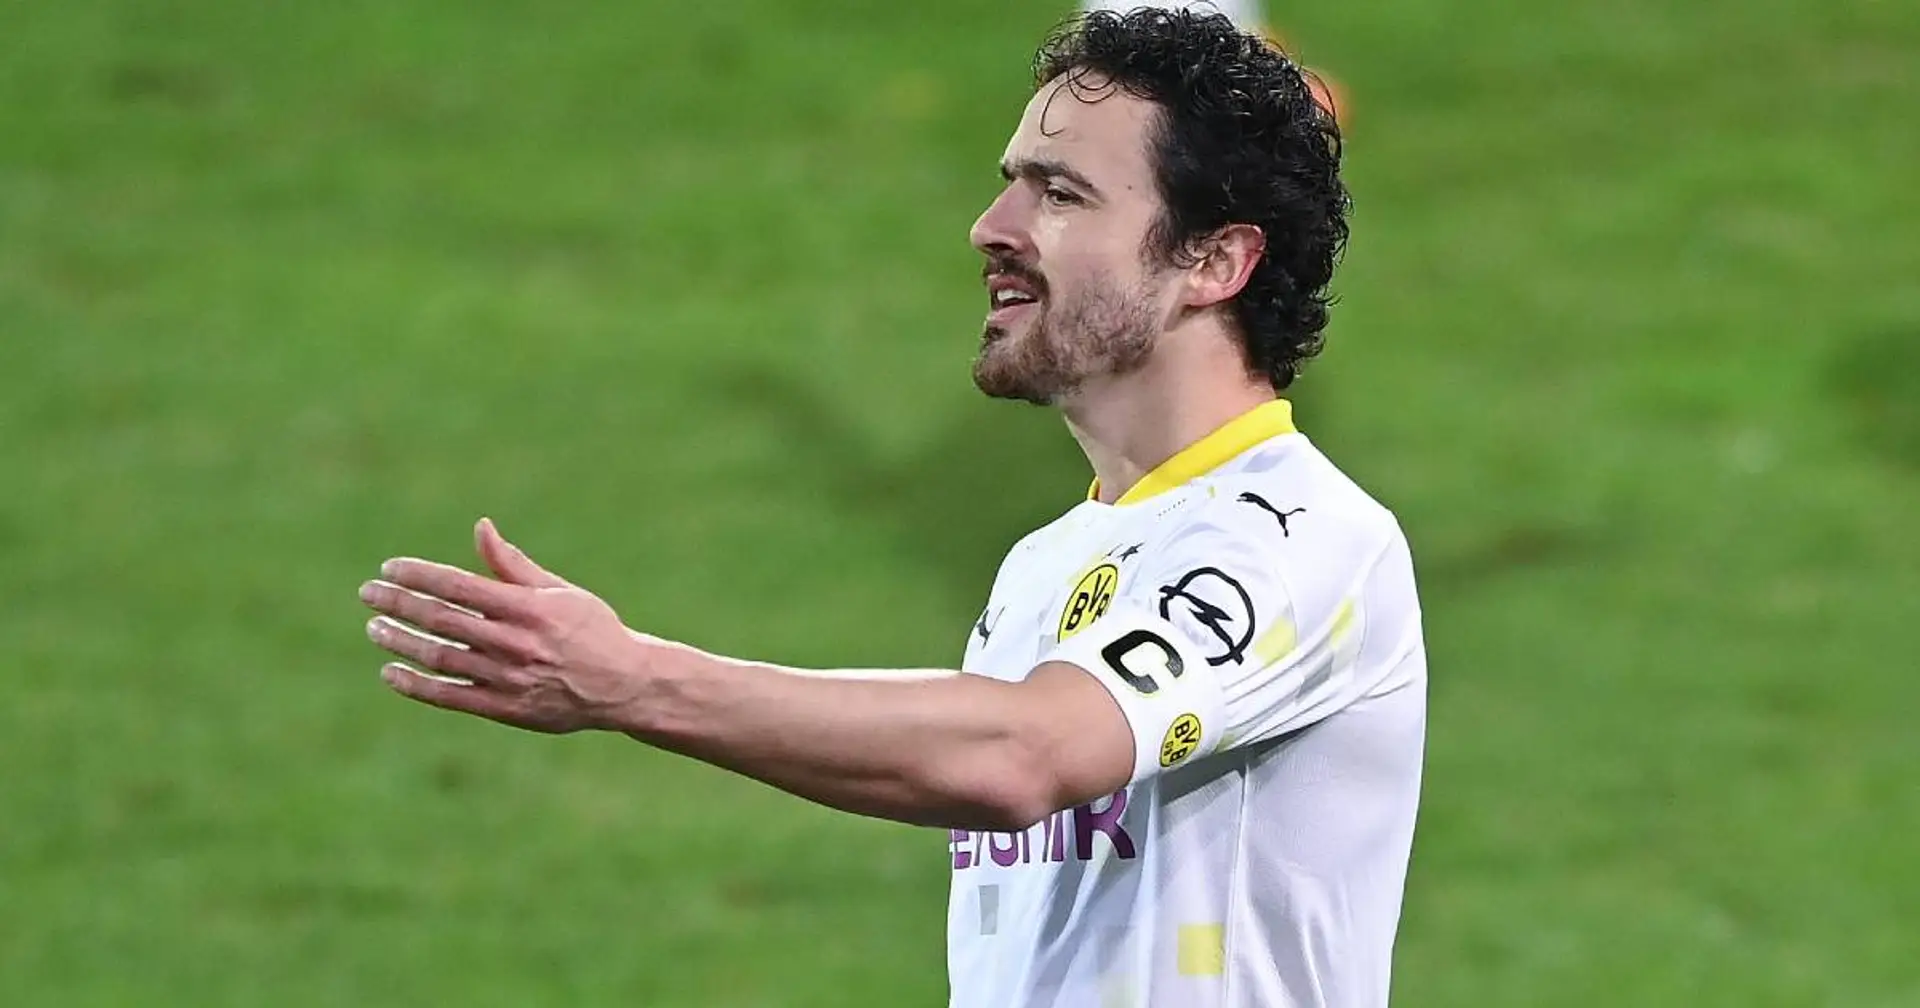 Thomas Delaney nach 2:0-Sieg in Braunschweig: "Hätten es besser machen können"